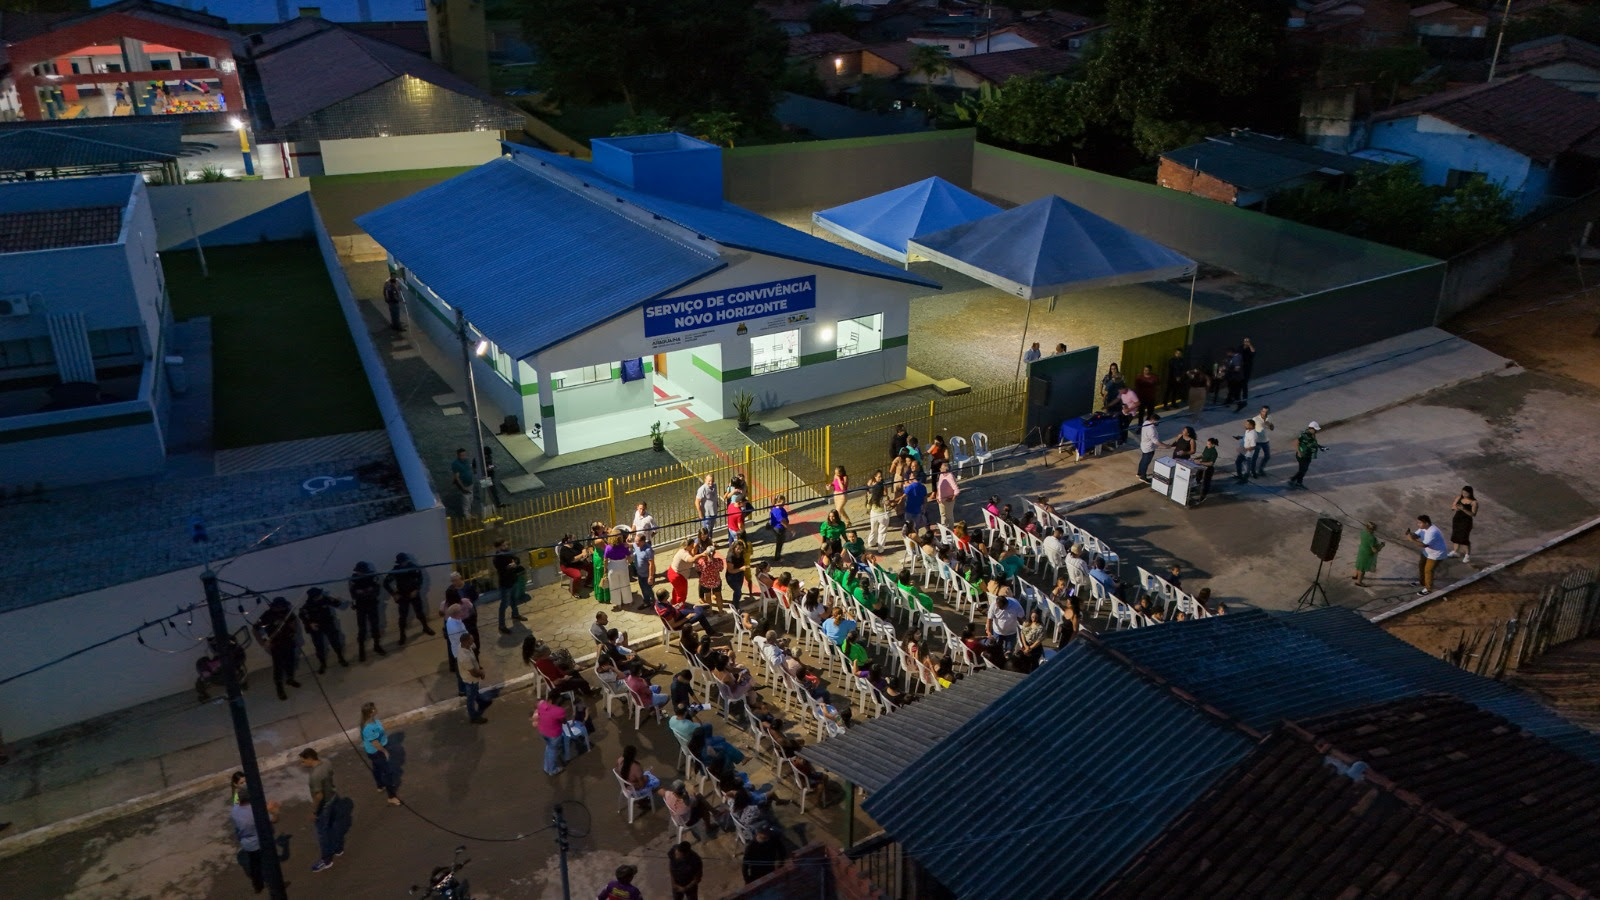 Moradores do Distrito Novo Horizonte começam a ser atendidos no novo prédio do SCFV (Serviço de Convivência e Fortalecimento de Vínculos) a partir desta quinta-feira, 2 de maio, das 7 às 18 horas